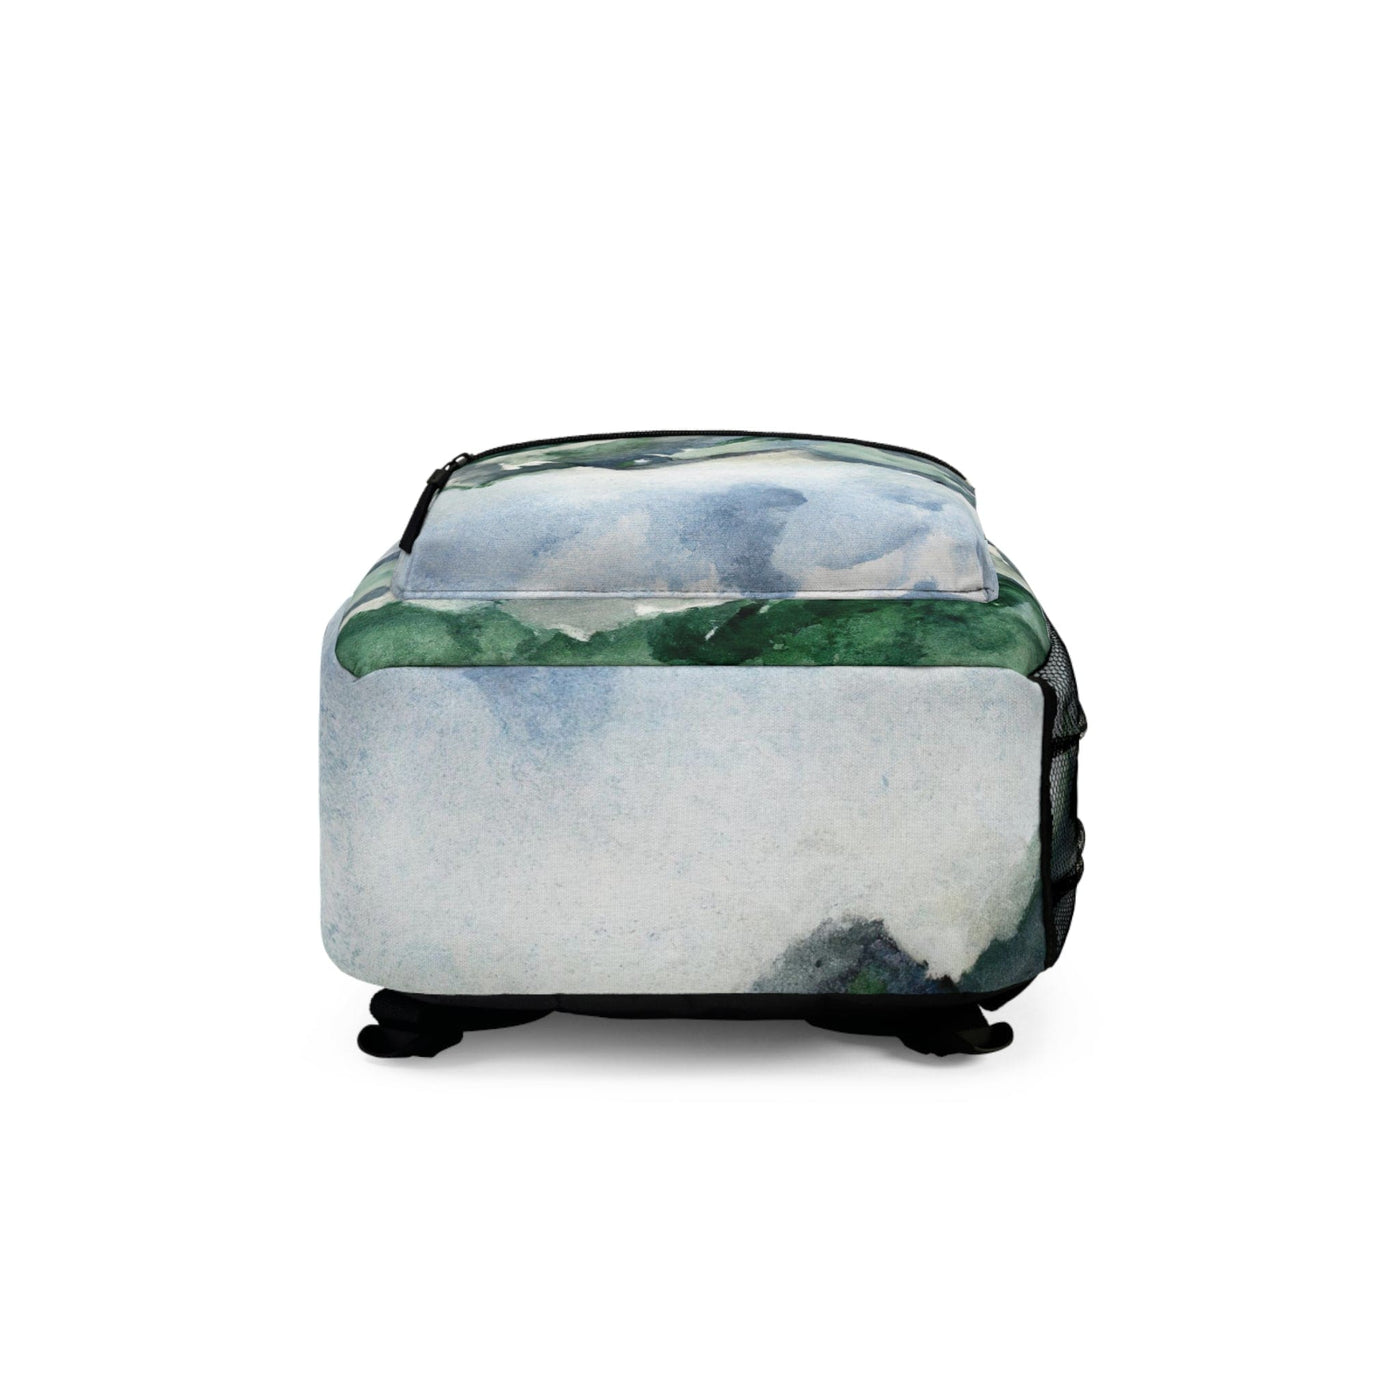 Backpack - Large Water-resistant Bag Green Mountainside Nature Landscape Blue